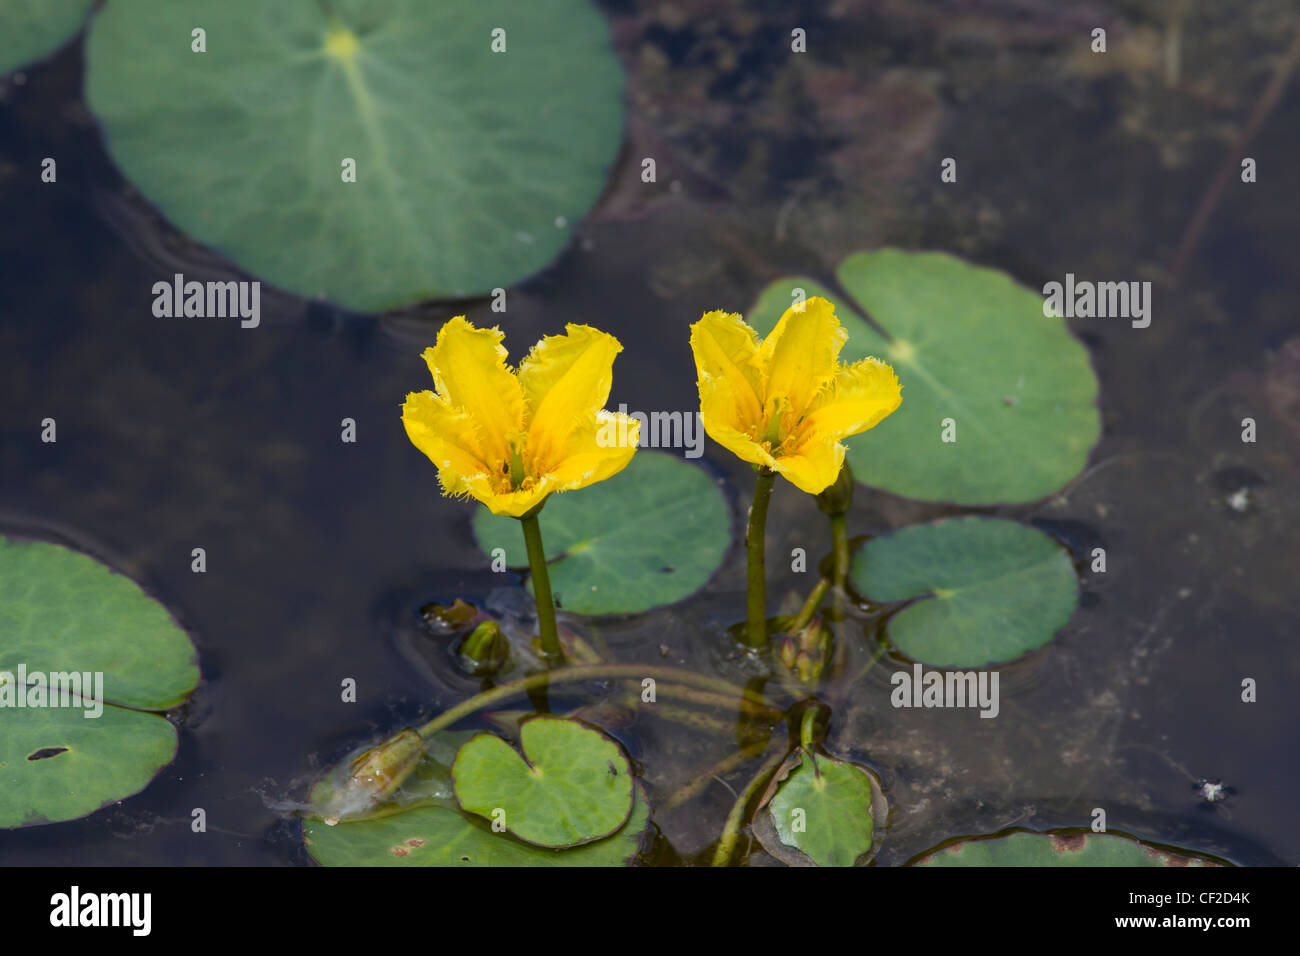 Europaeische Seekanne, Nymphoides peltata, fringed water-lily Stock Photo